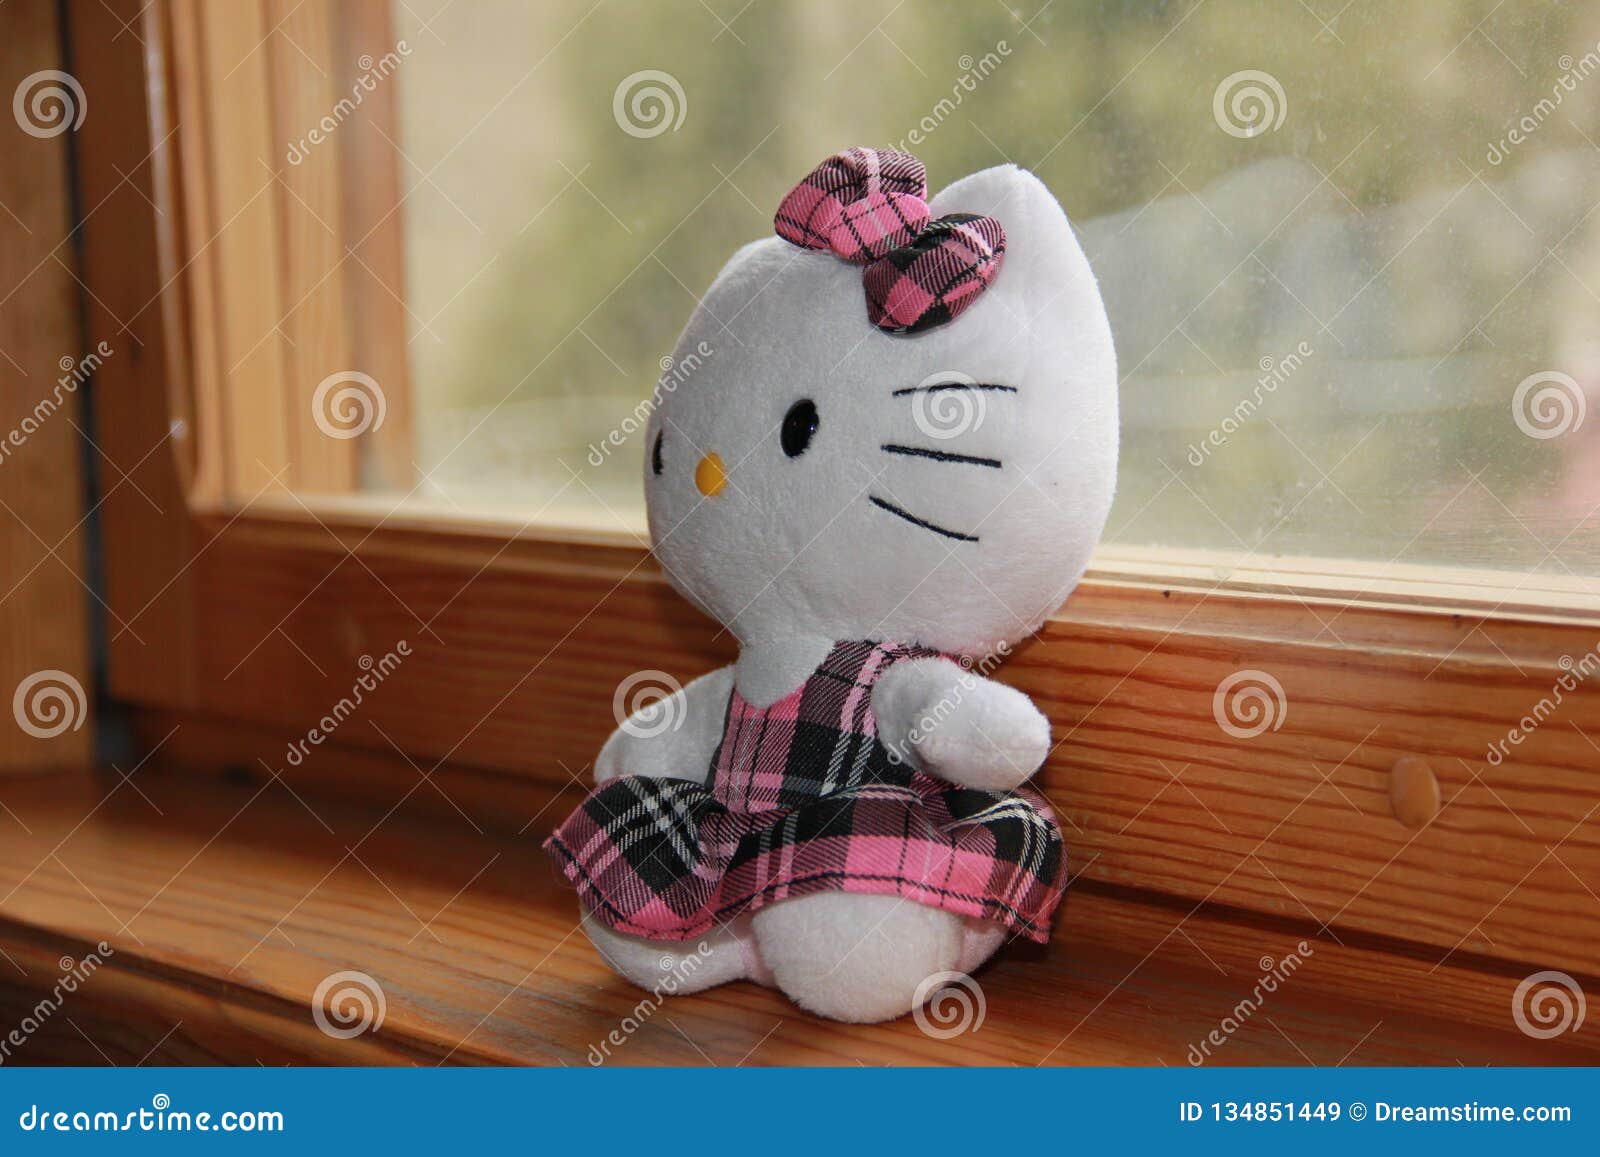 Đồ chơi Hello Kitty đáng yêu trên nền cửa sổ là lựa chọn hoàn hảo cho những ai yêu thích những chú mèo ngộ nghĩnh này. Với màu sắc và hình dáng đáng yêu, những chiếc đồ chơi này sẽ làm cho căn phòng của bạn trở nên sinh động và đầy màu sắc hơn.